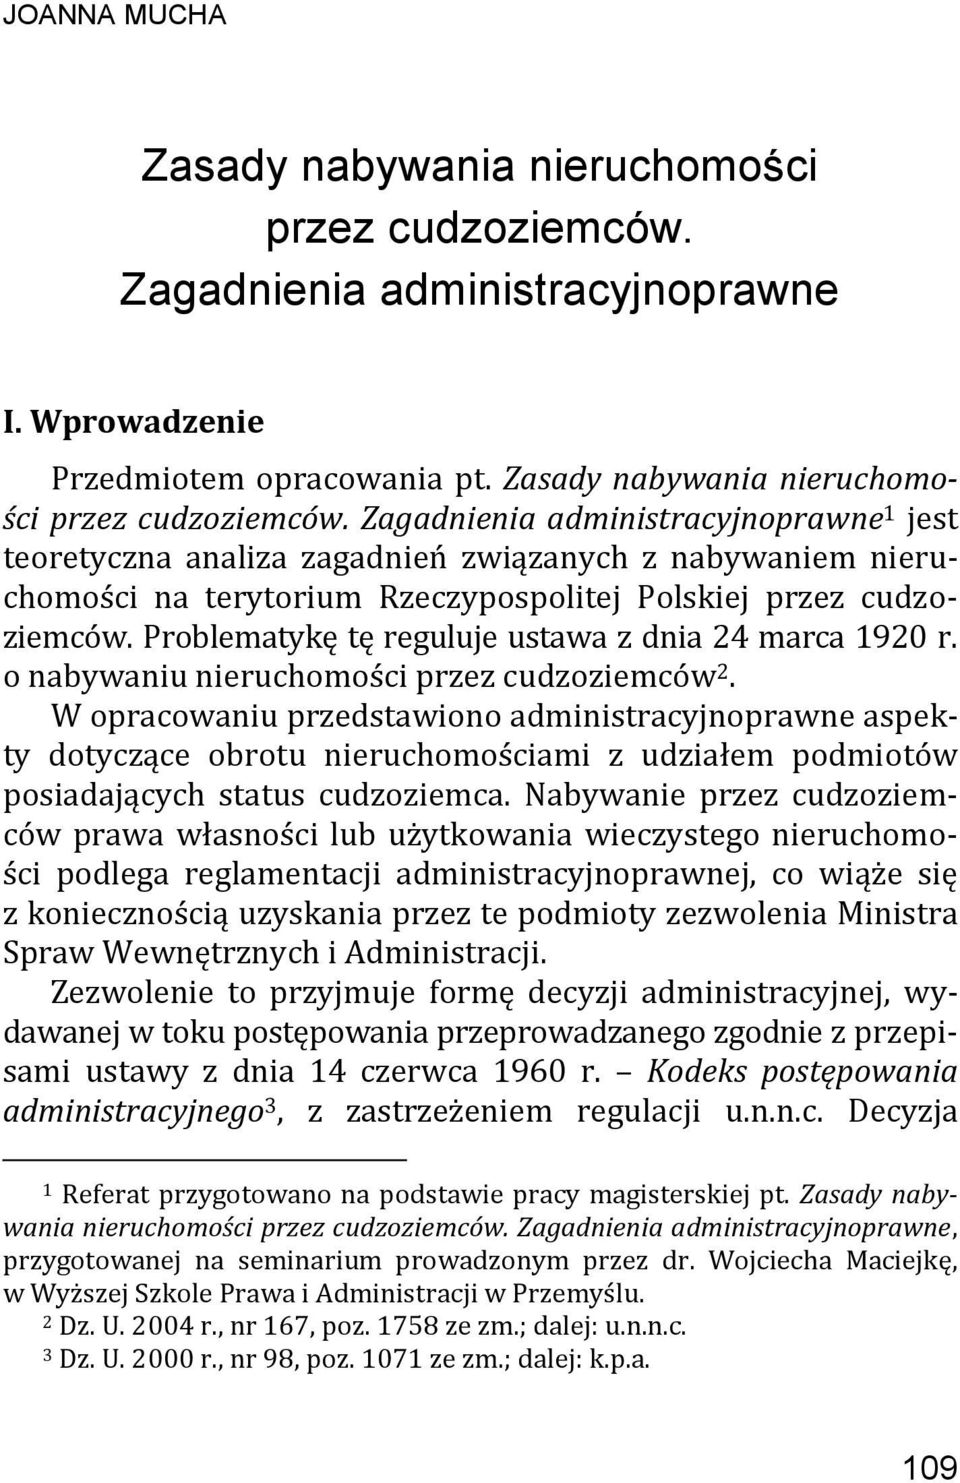 Zagadnienia administracyjnoprawne 1 jest teoretyczna analiza zagadnień związanych z nabywaniem nieruchomości na terytorium Rzeczypospolitej Polskiej przez cudzoziemców.